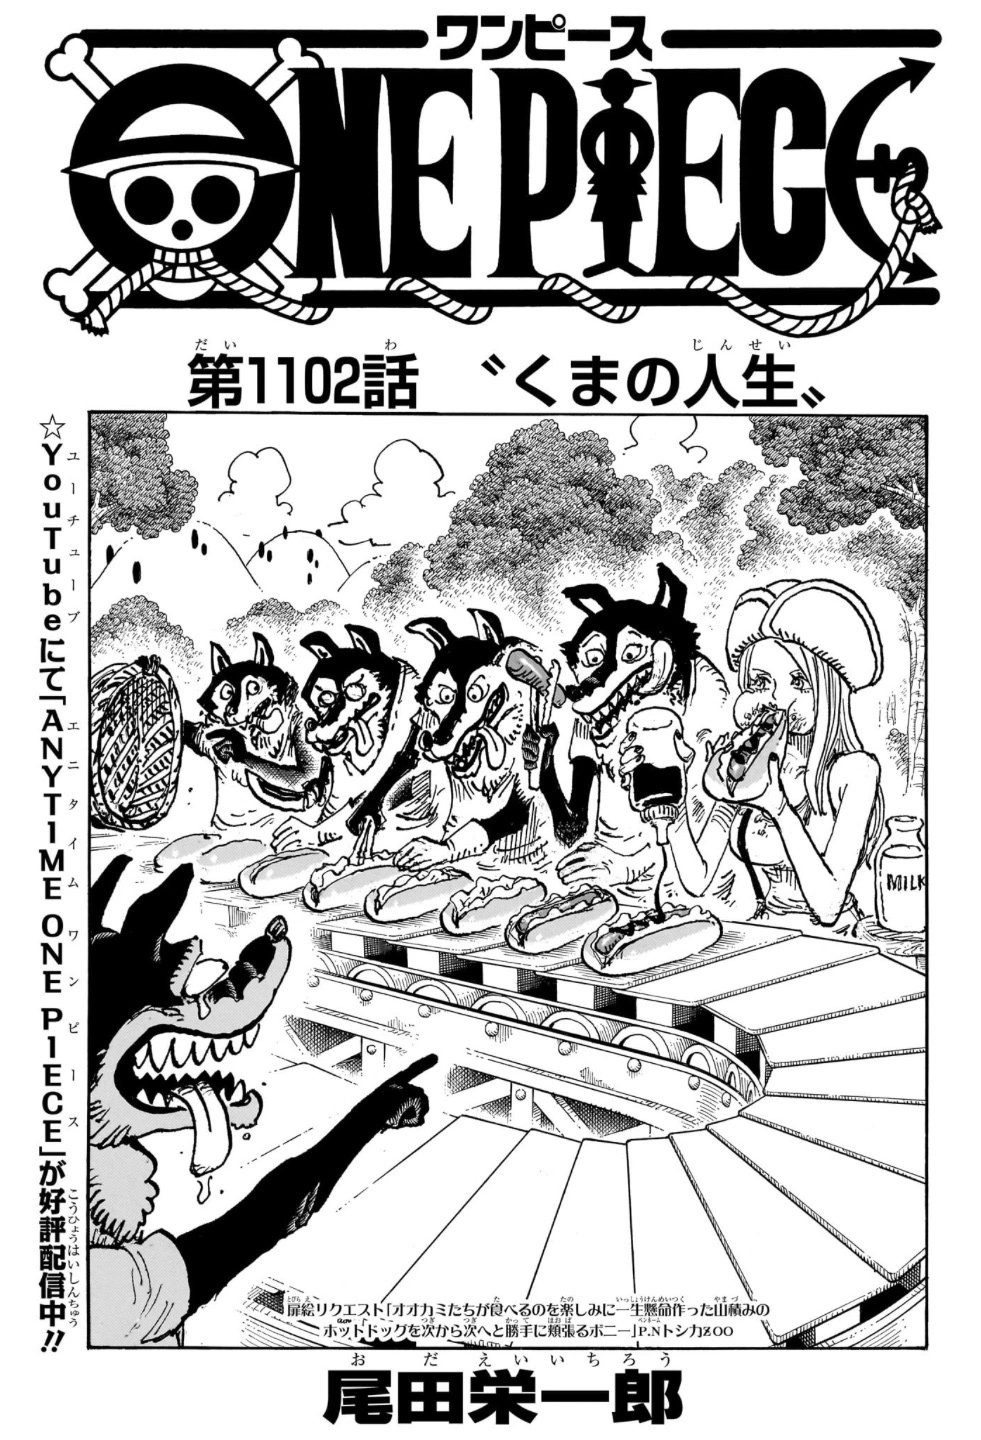 Capitolo 1102: La vita di Orso, One Piece Wiki Italia